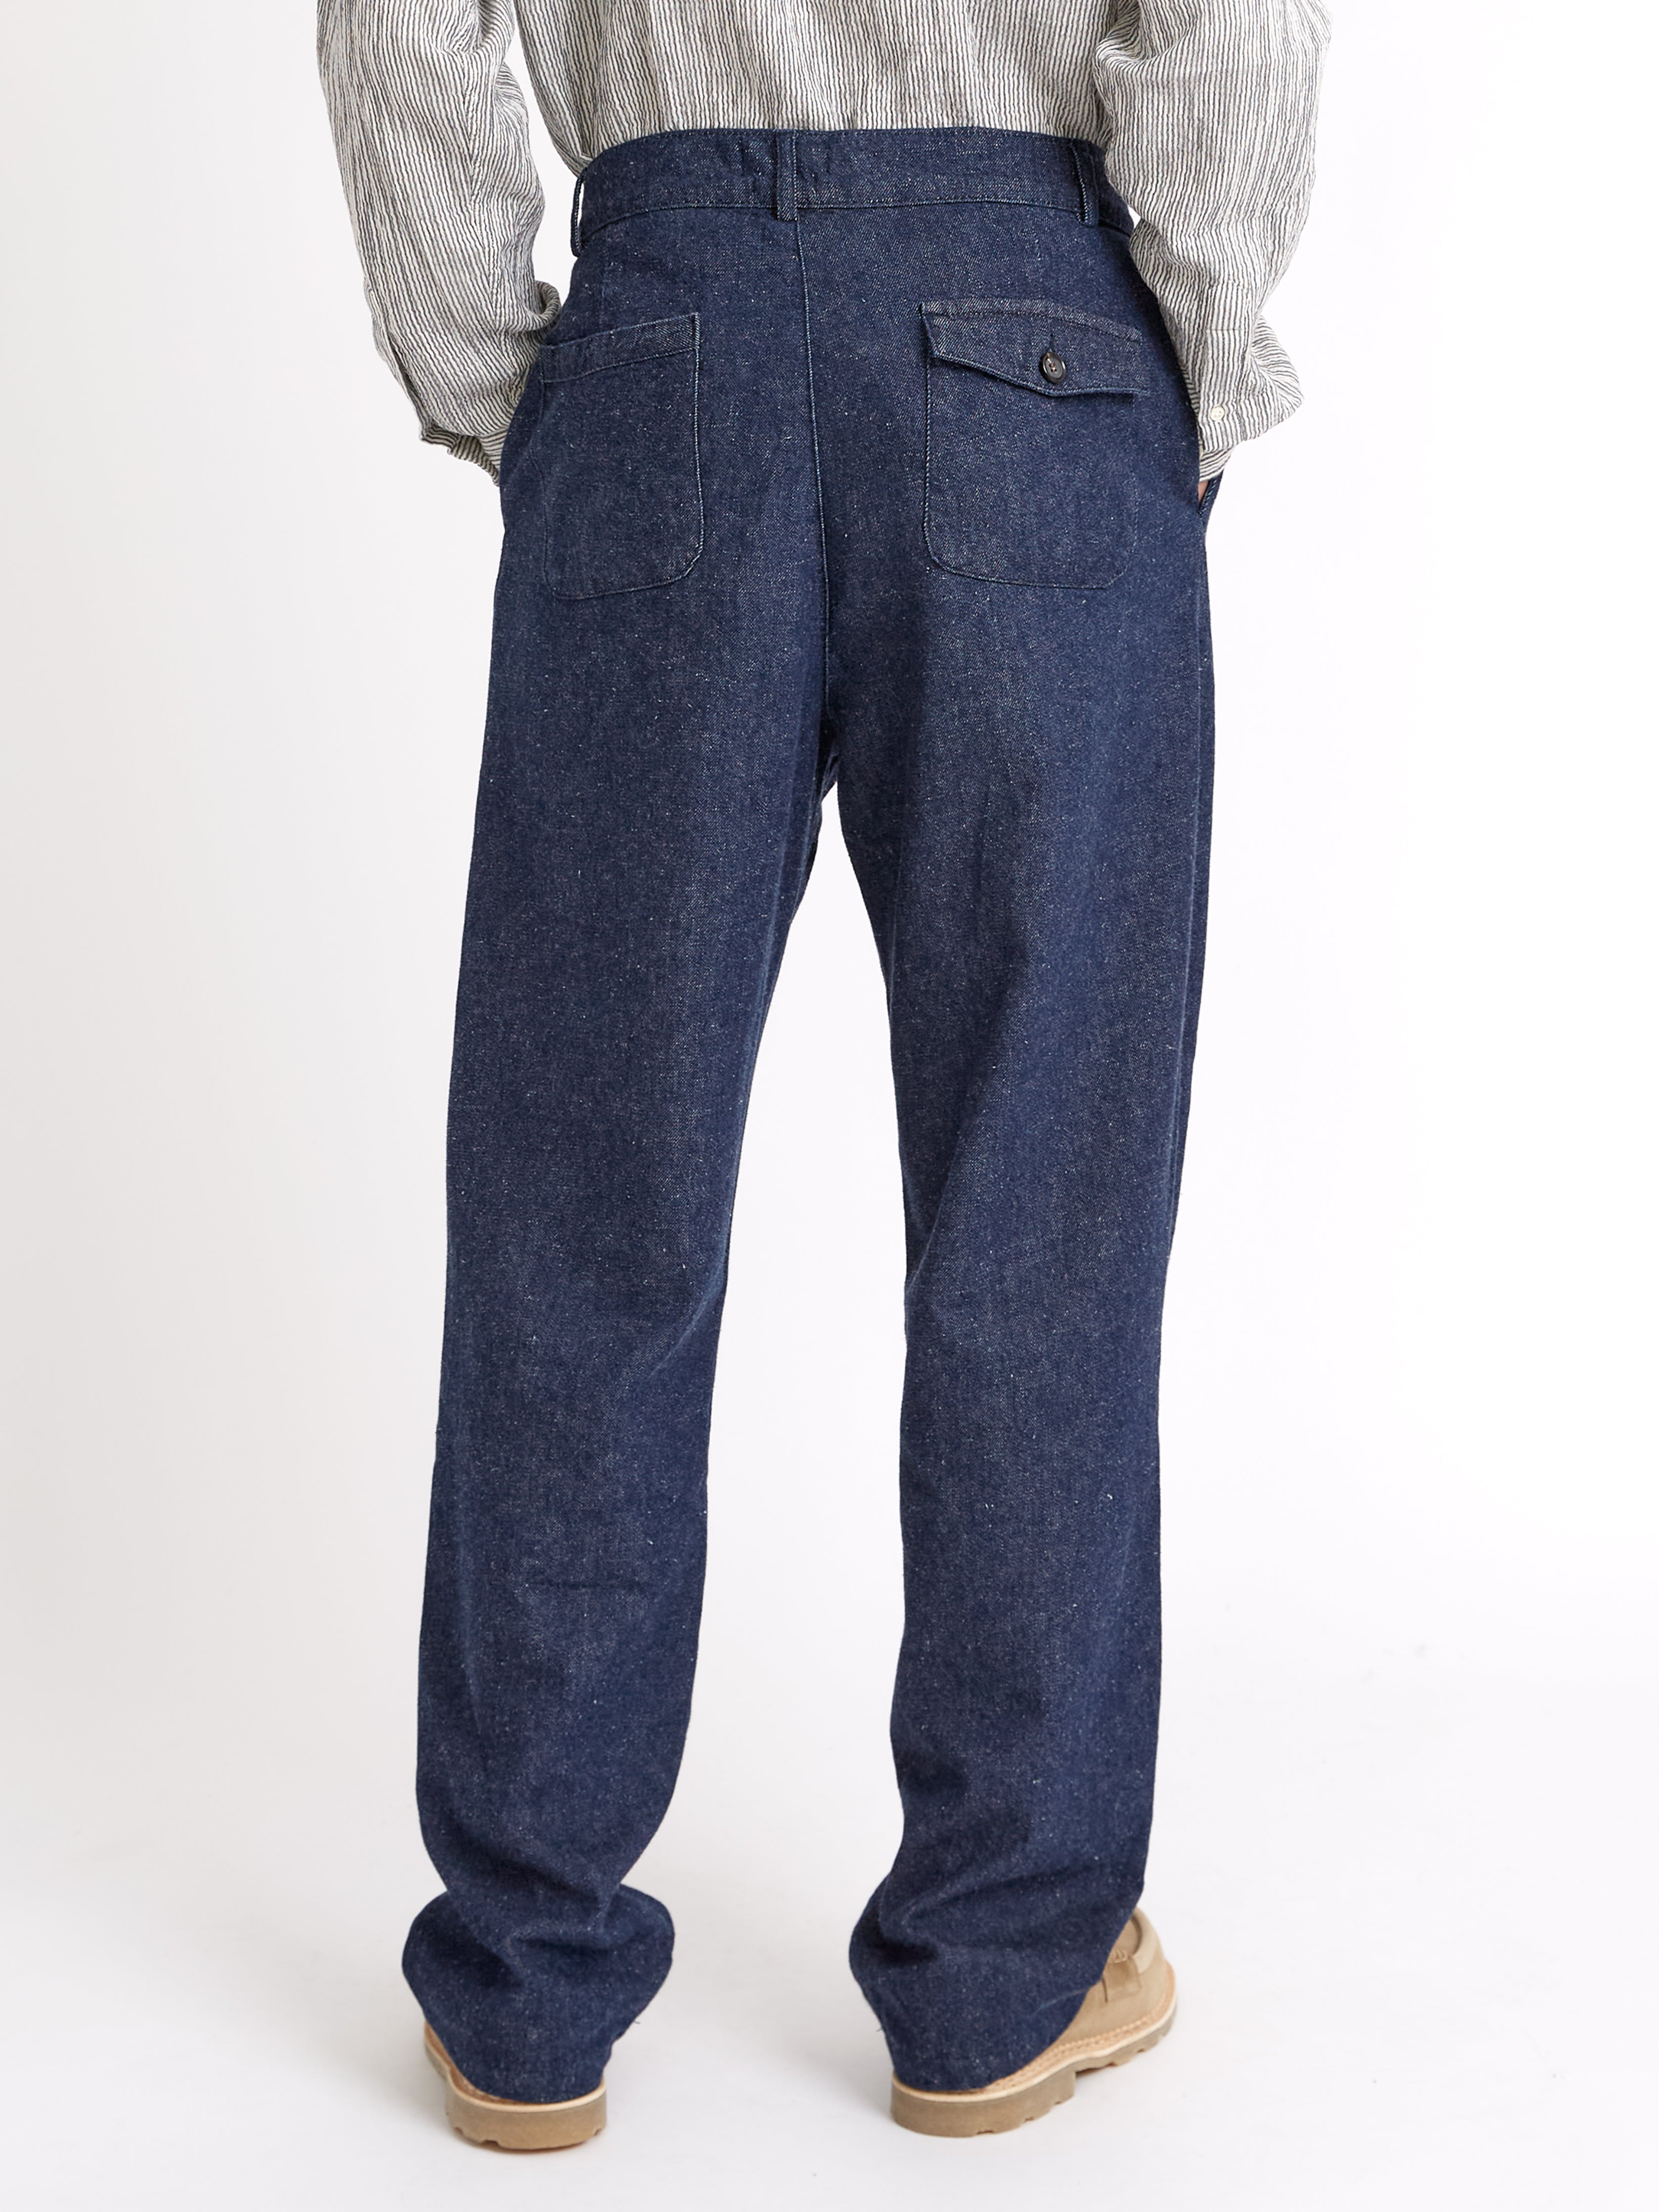 Morton Pleated Trousers Burnham Denim Indigo Blue